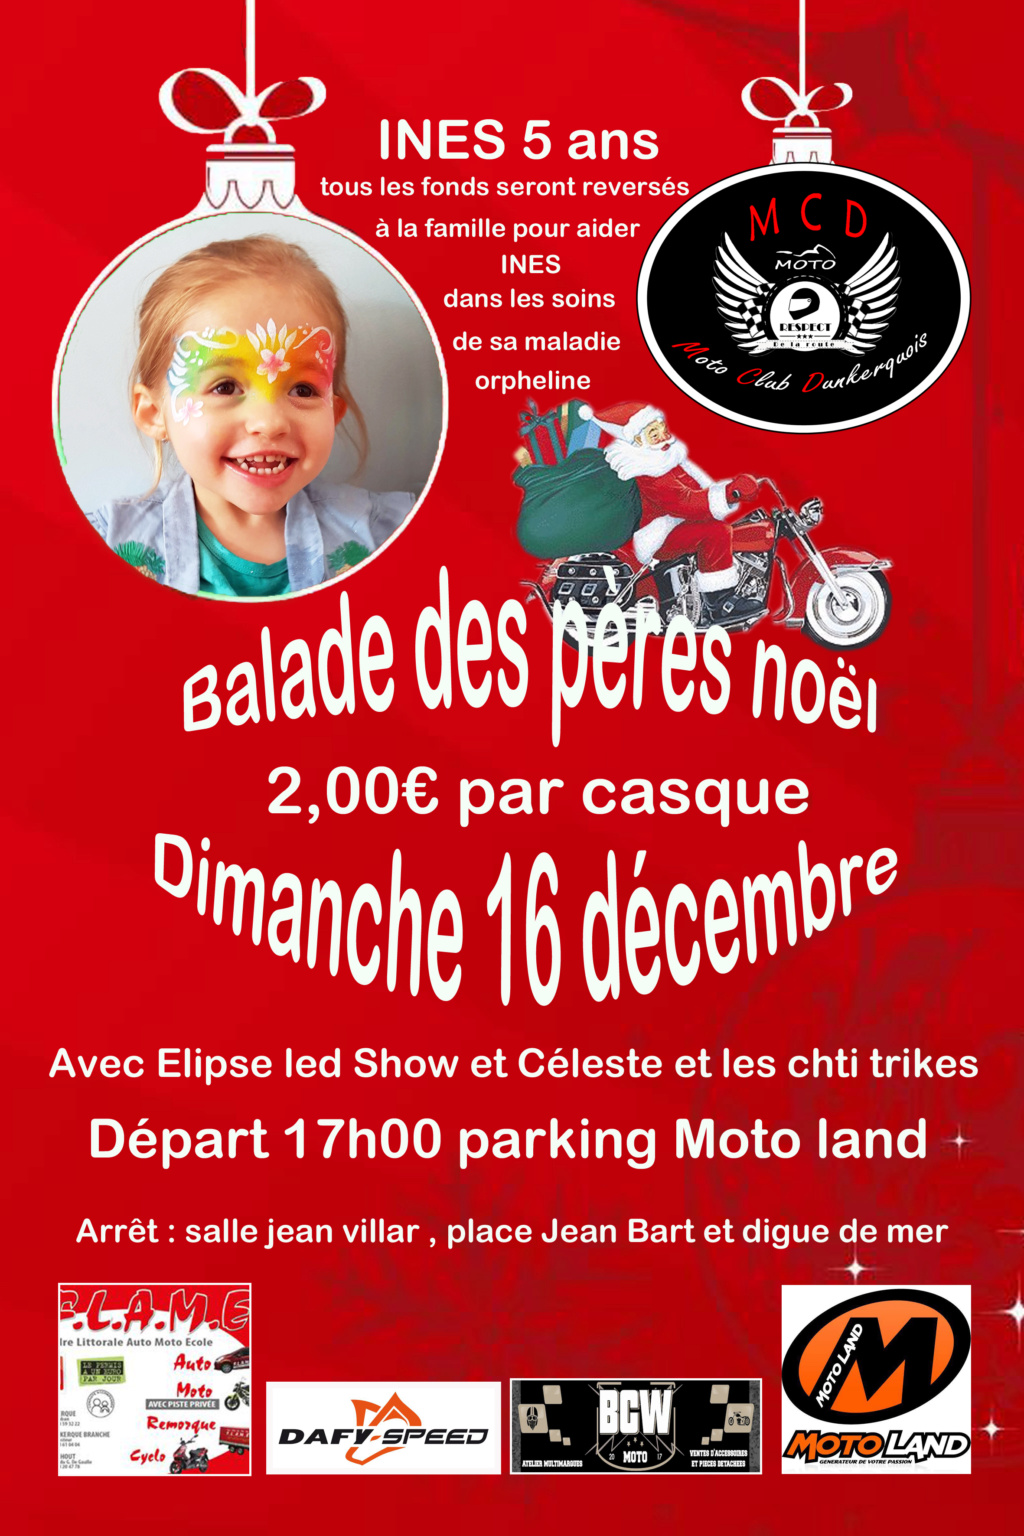 Balade - Dimanche 16 Décembre 2018 - Dunkerque  Affich21